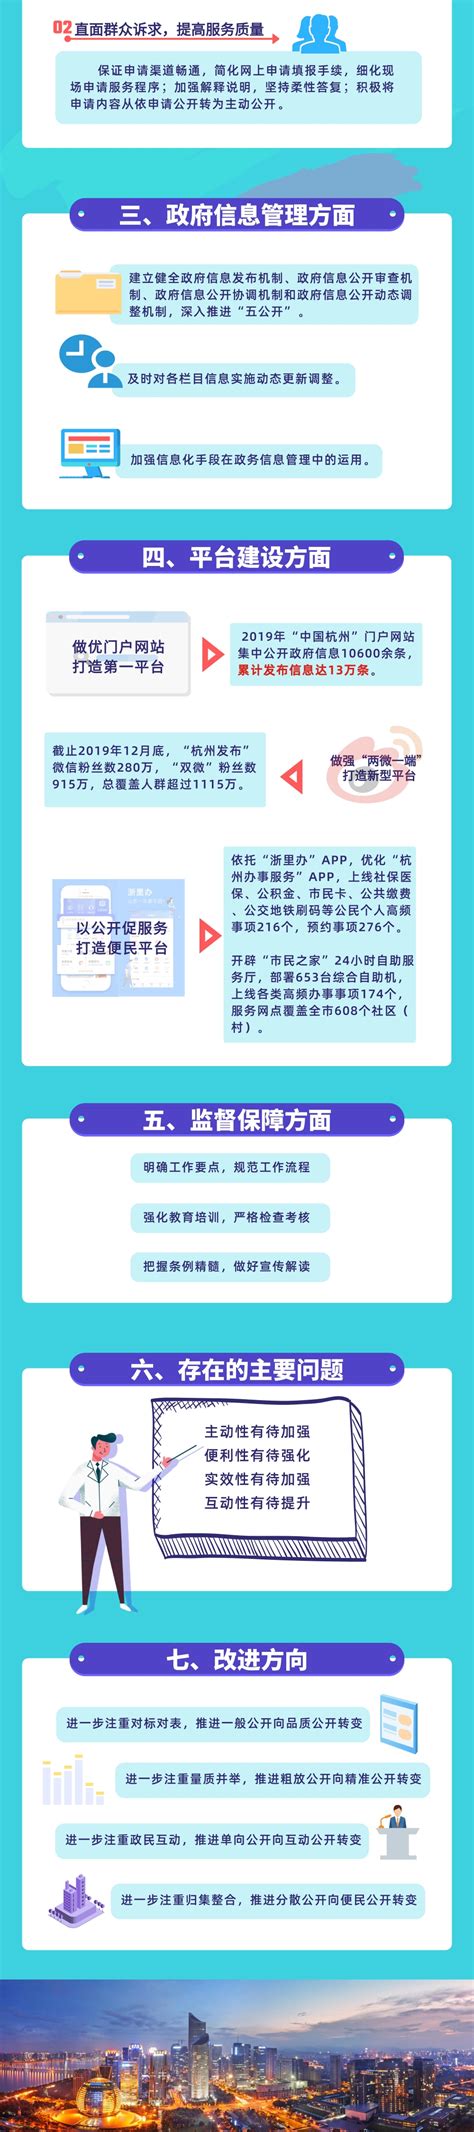 杭州市人民政府门户网站 政府信息公开指南